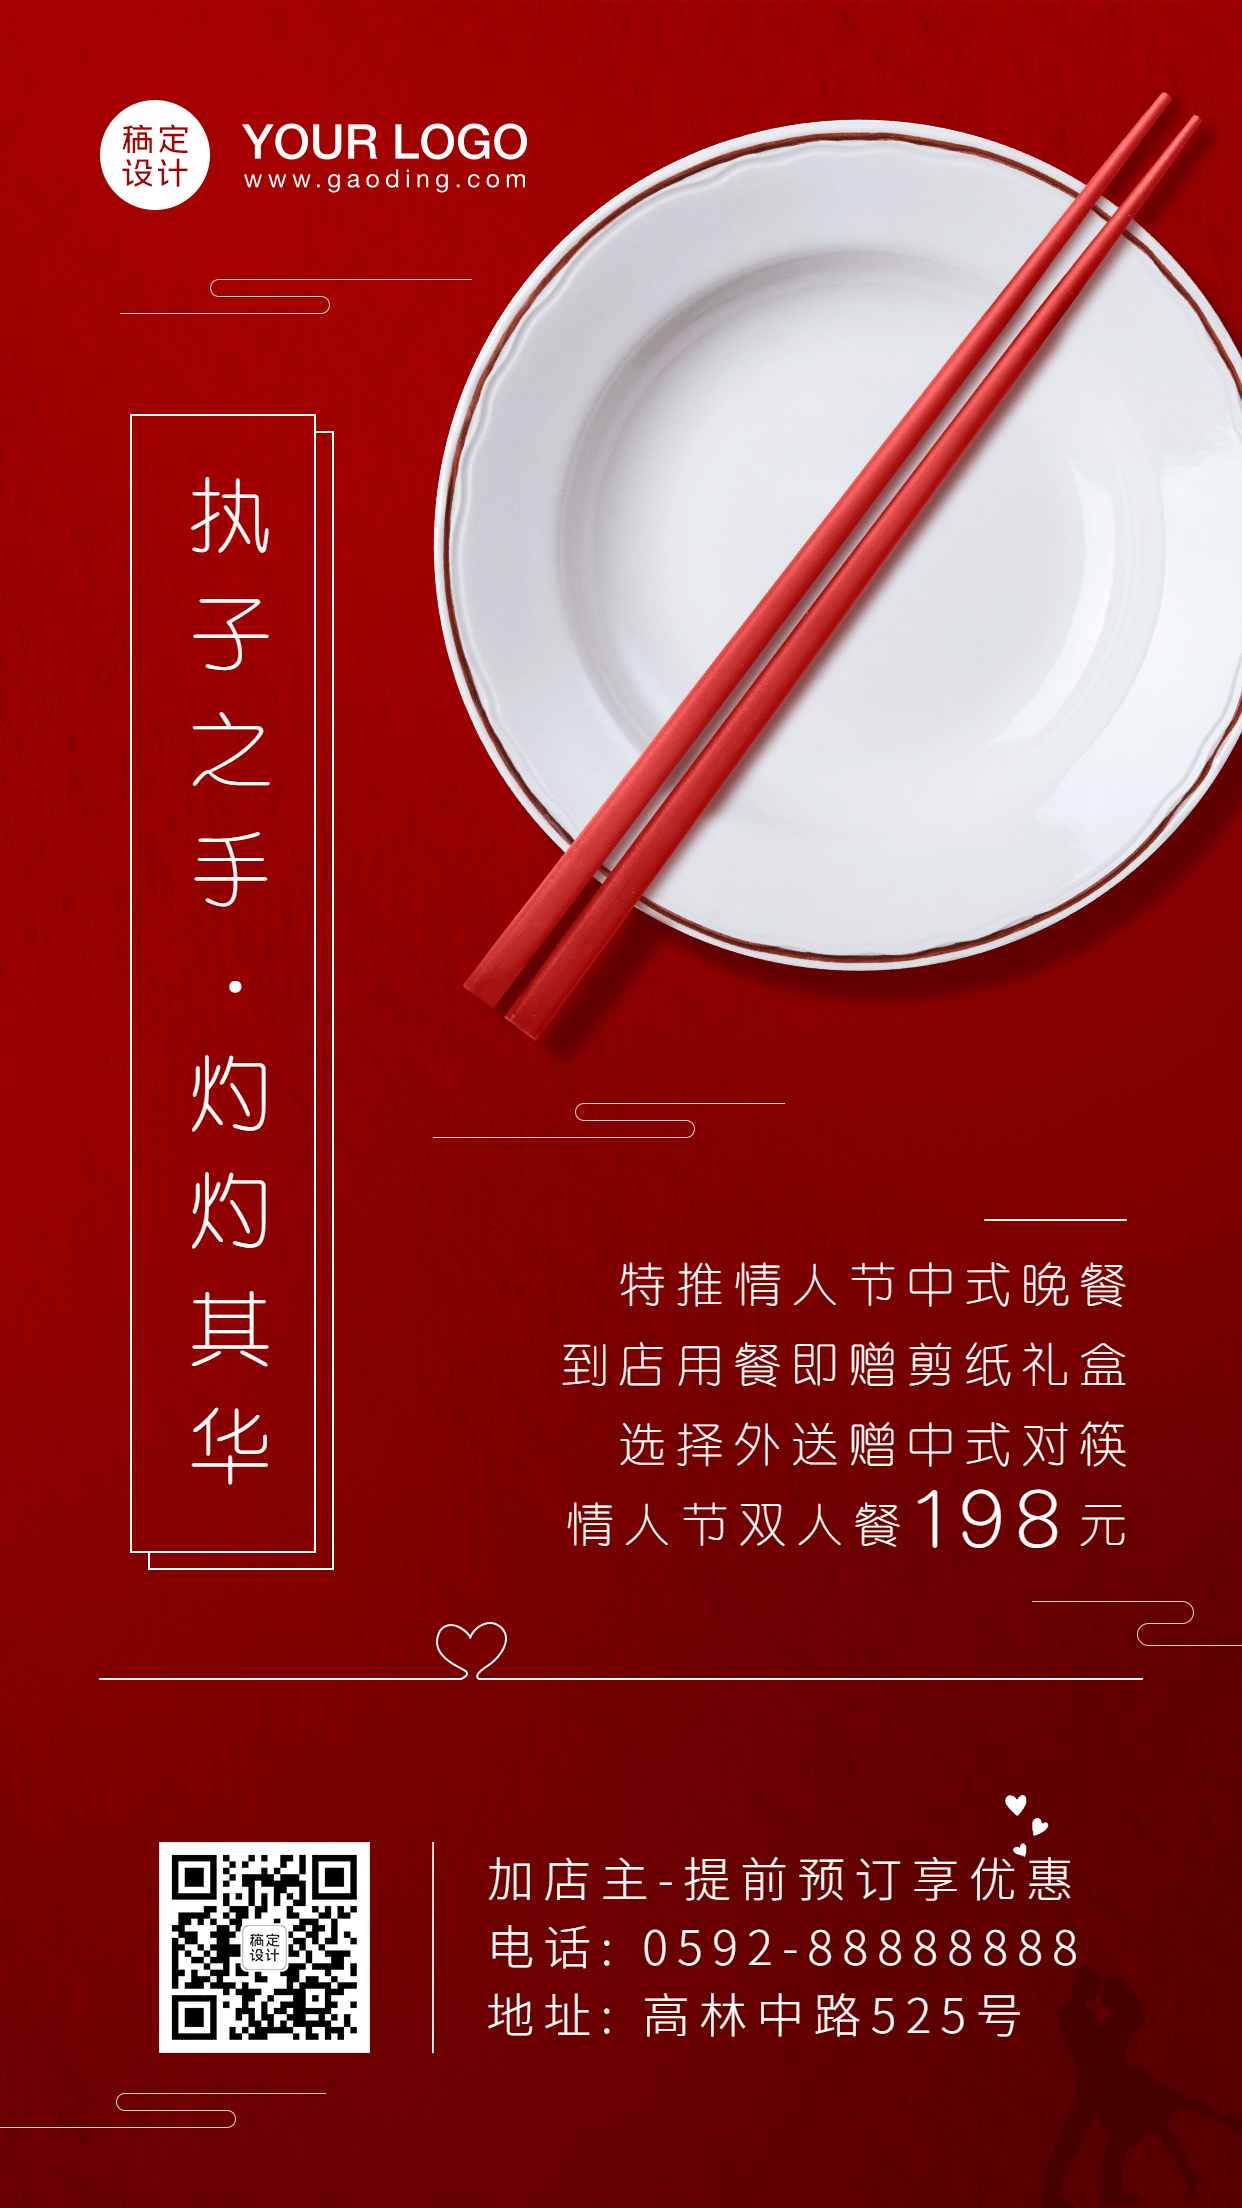 餐饮中式情人节活动促销海报